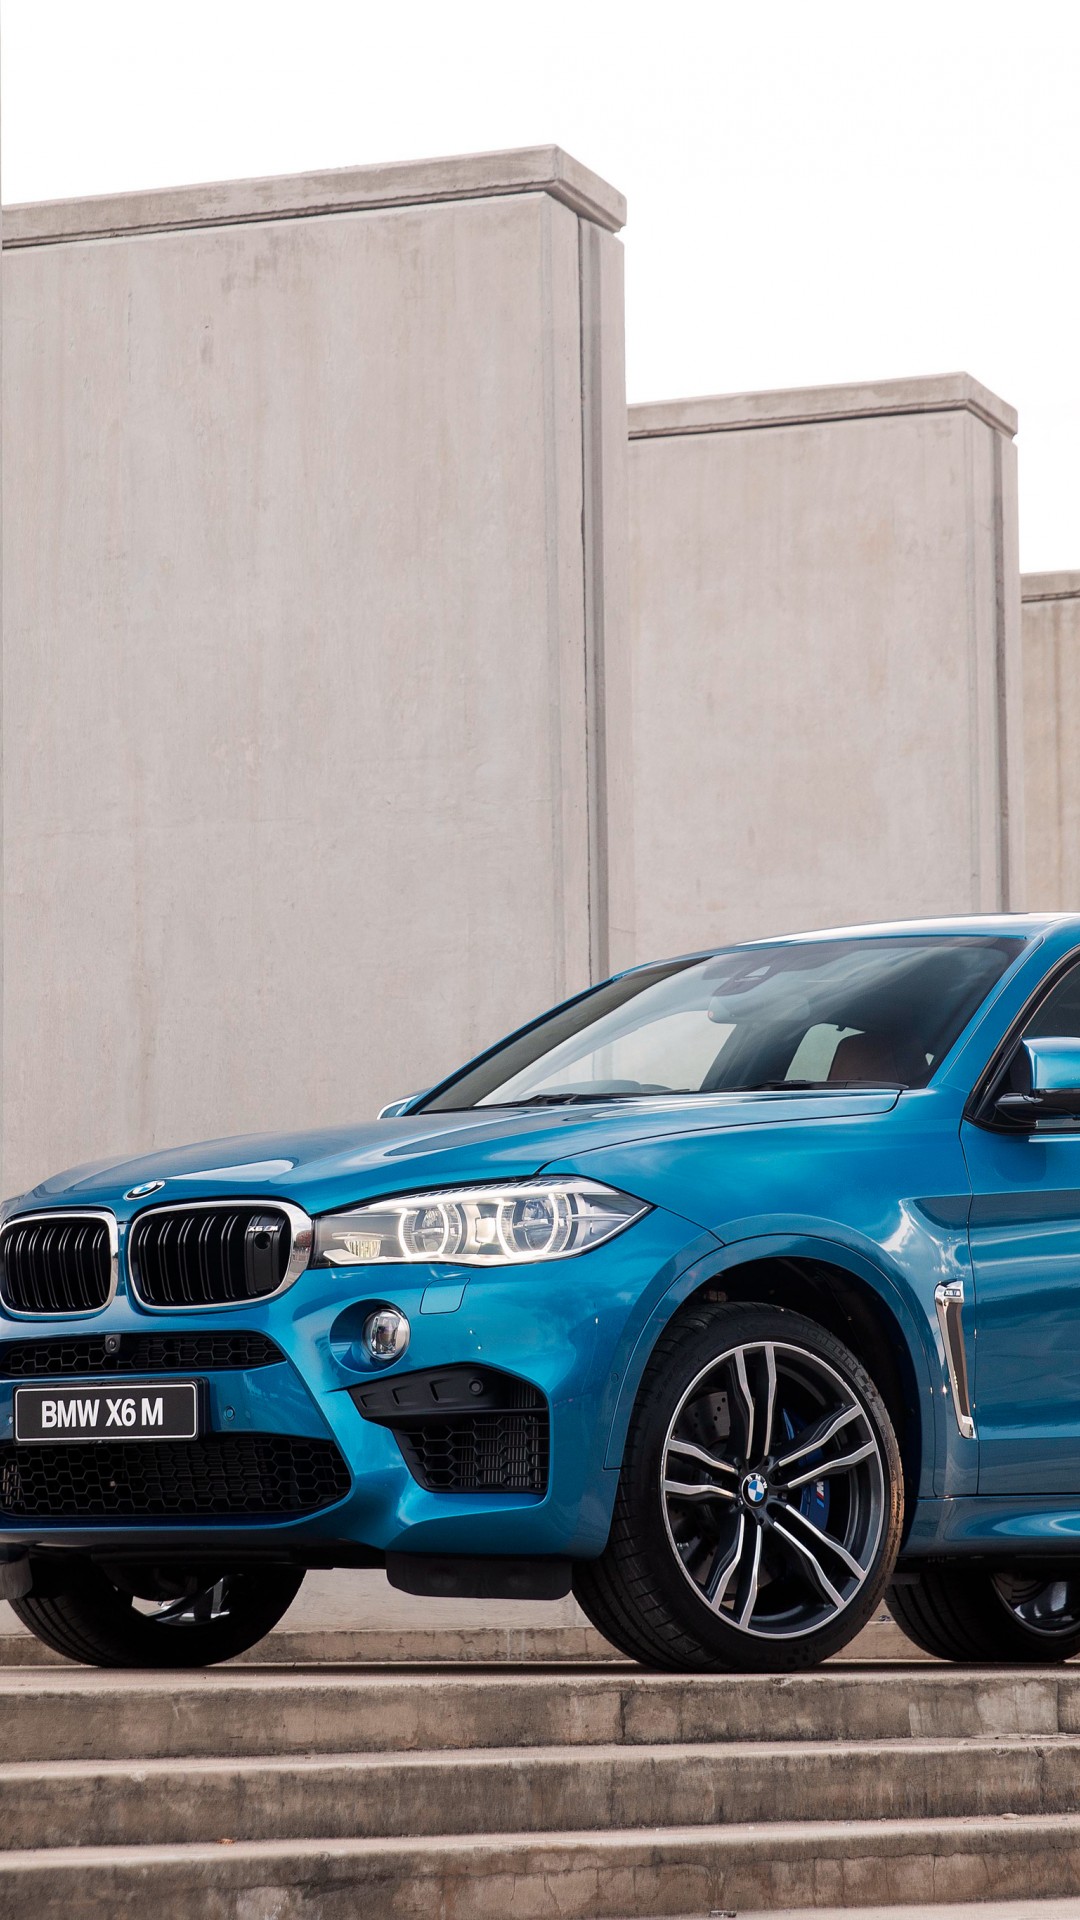 BMW X6 M 2016 синего цвета 1080x1920